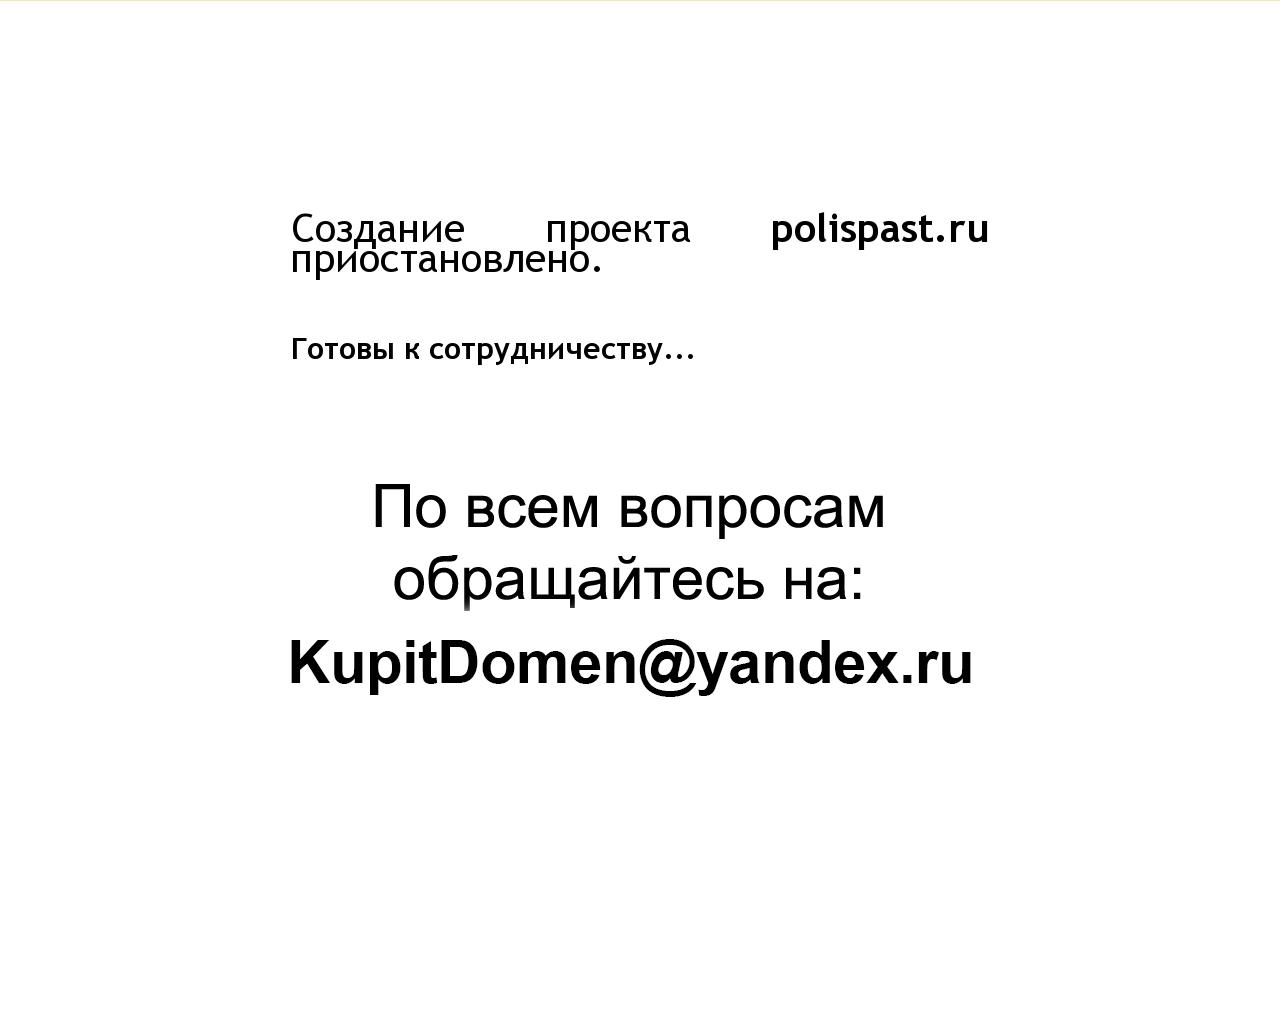 Изображение сайта polispast.ru в разрешении 1280x1024